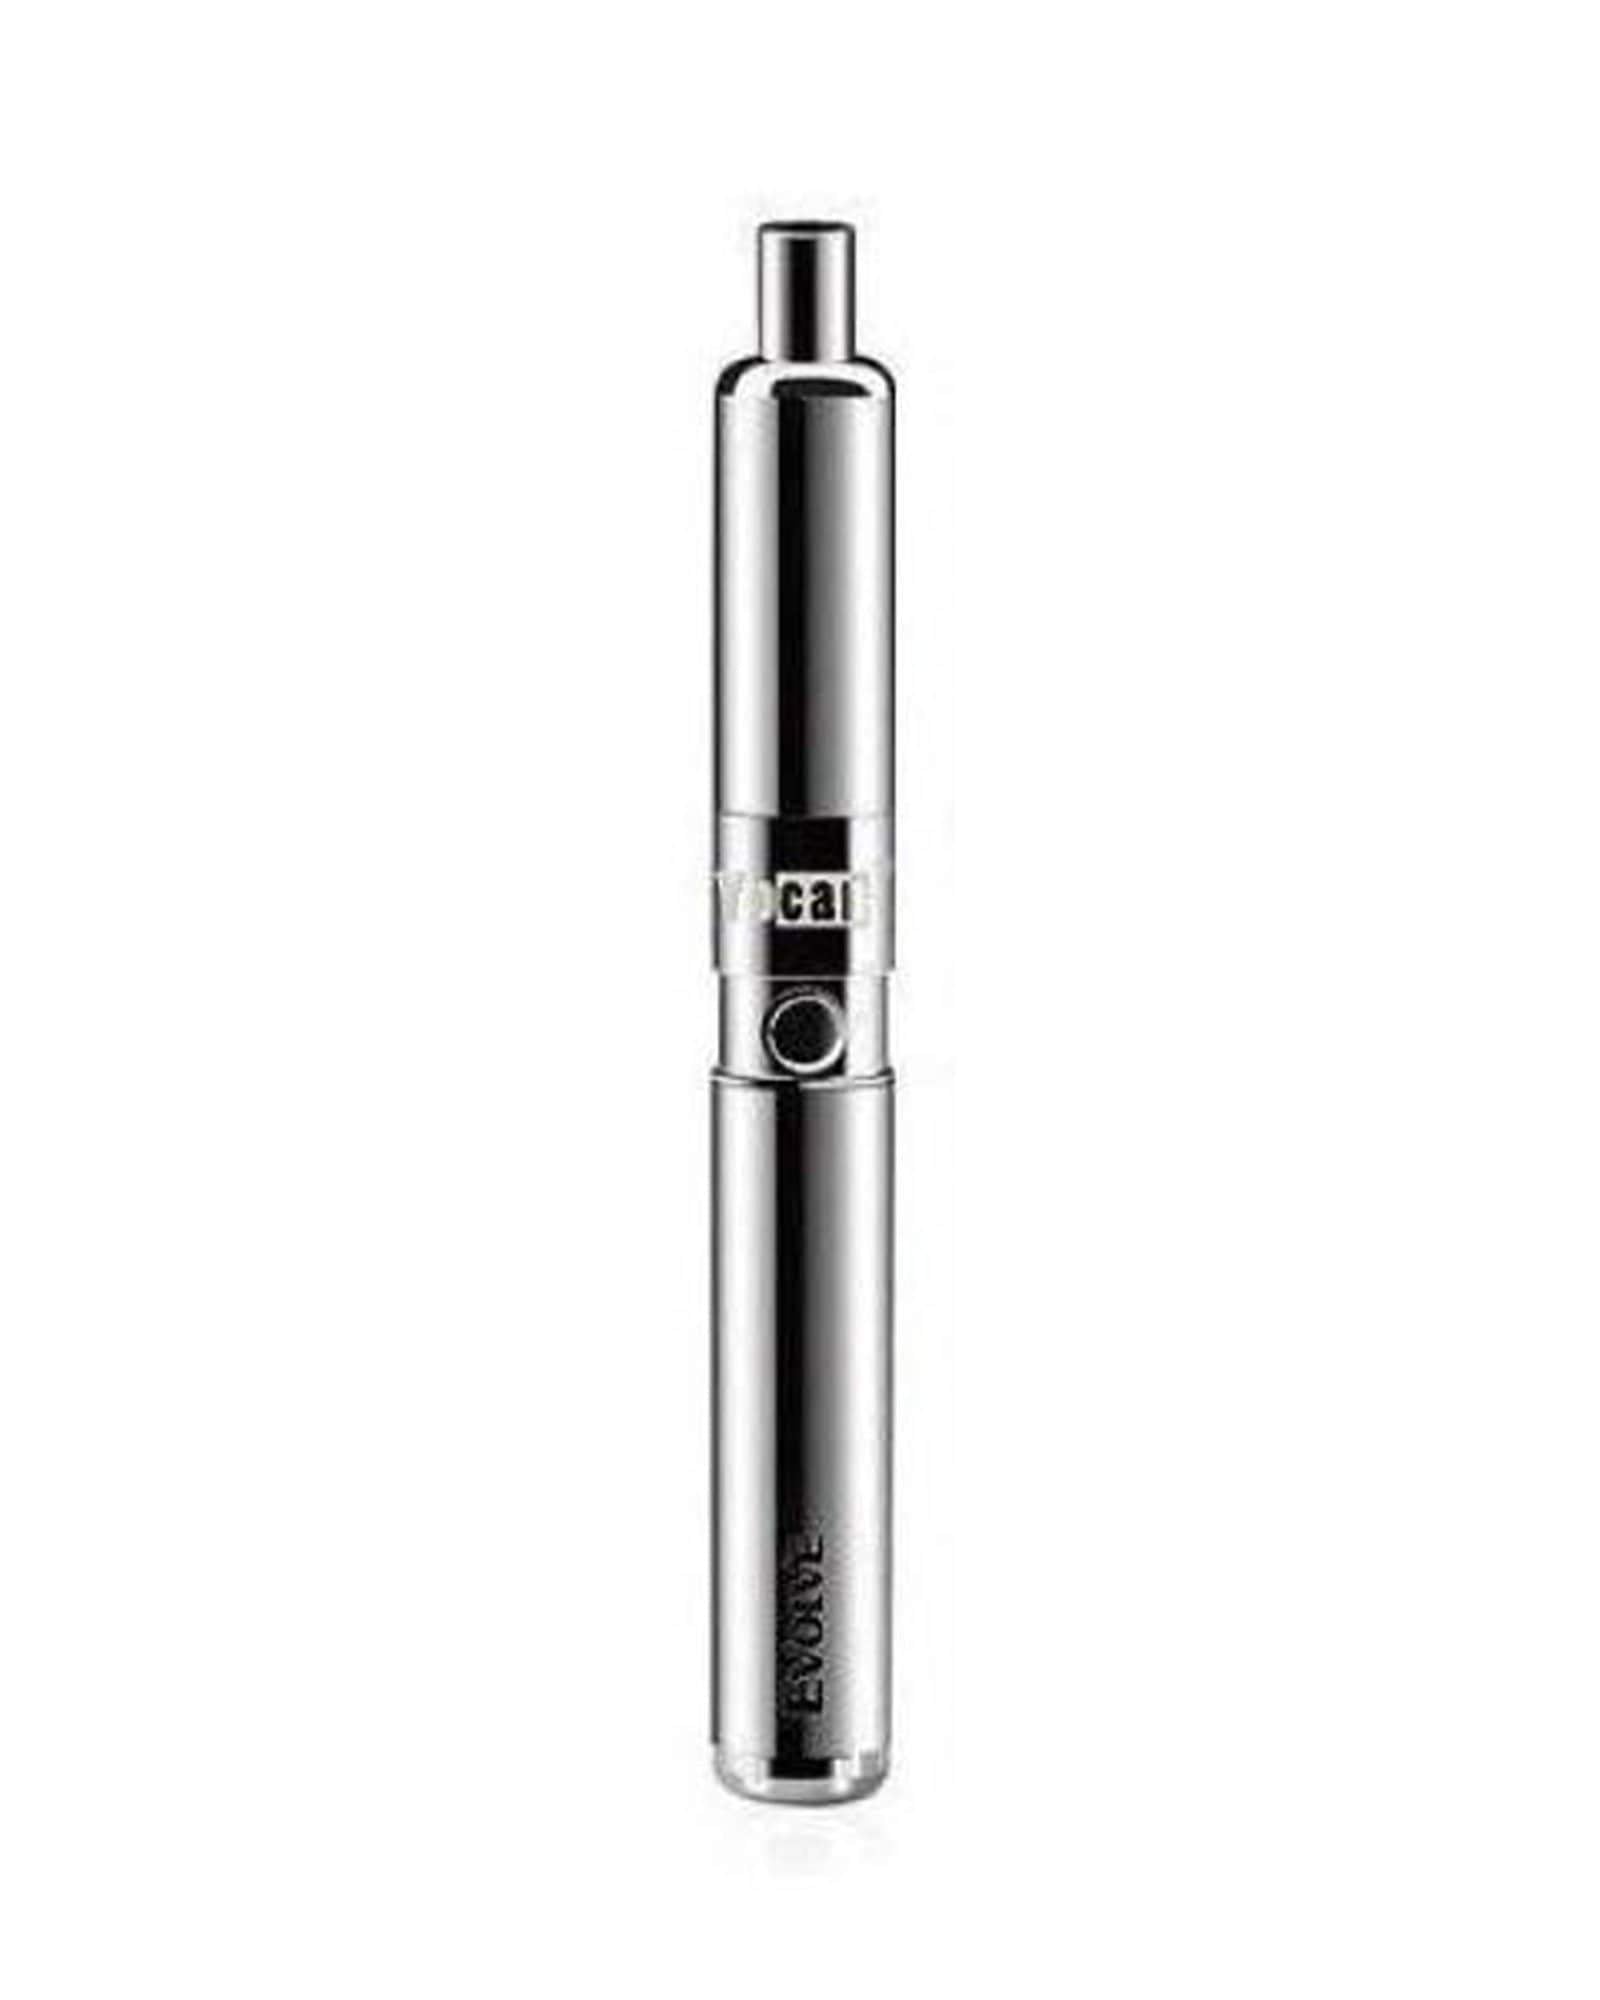 Evolve-D Vaporizer Pen